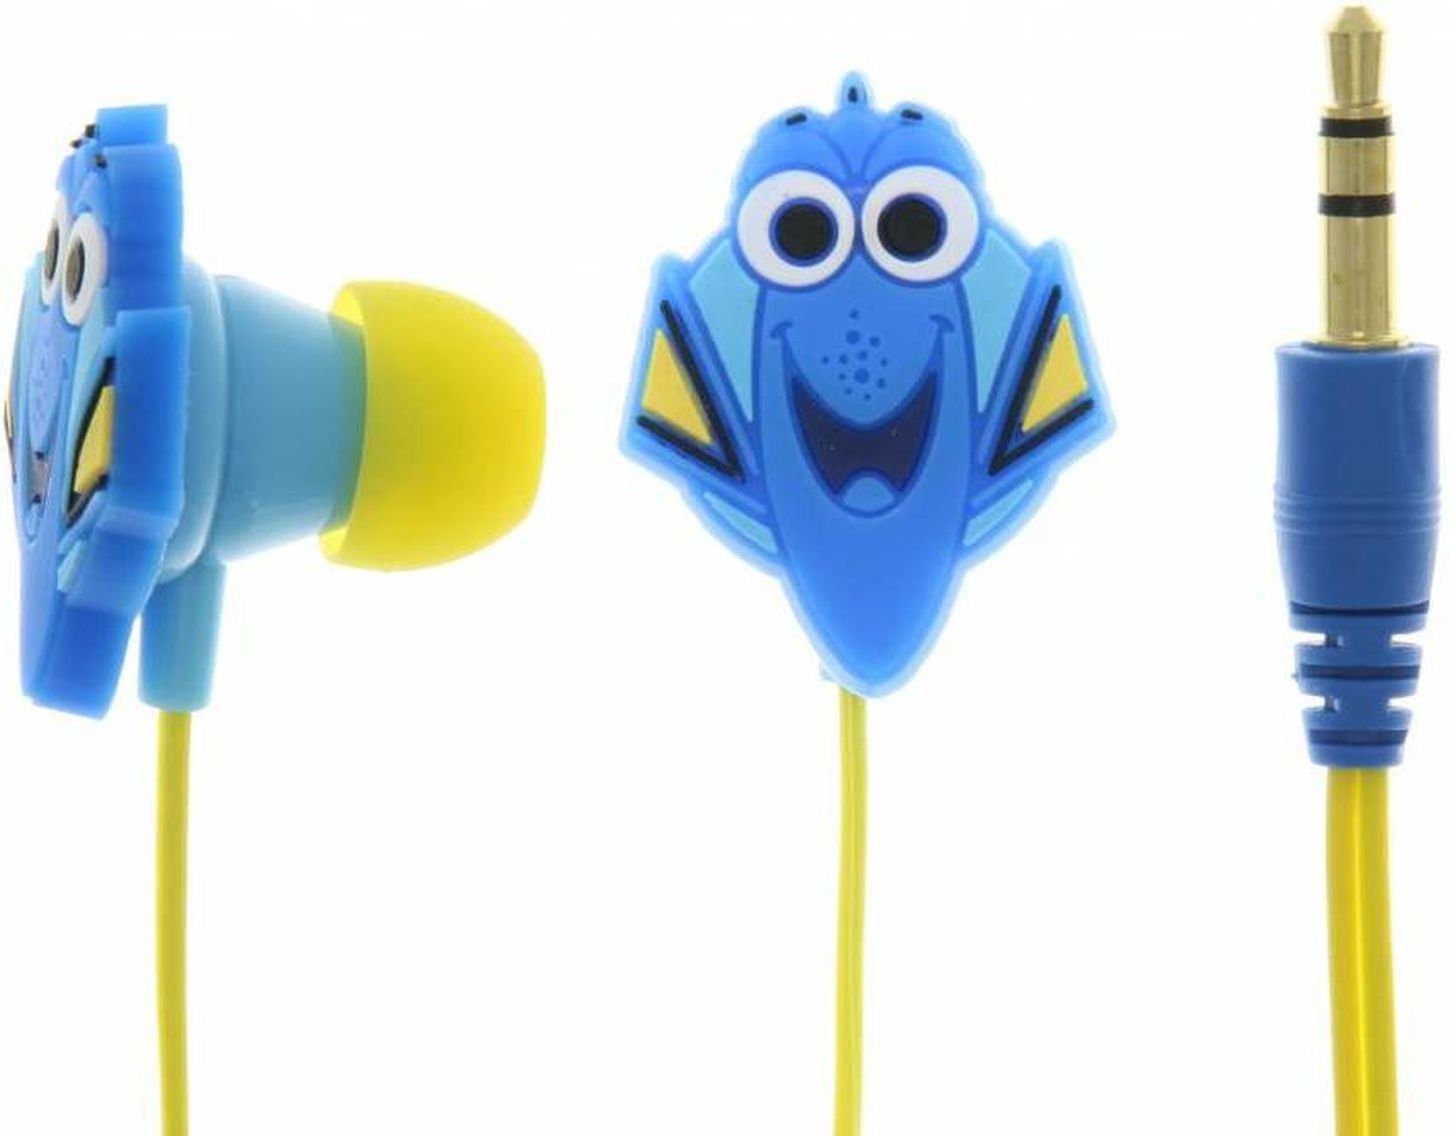 Disney Pixar Finding Dory In-Ear Kinder-Kopfhörer (Kindgerechte Lautstärke)